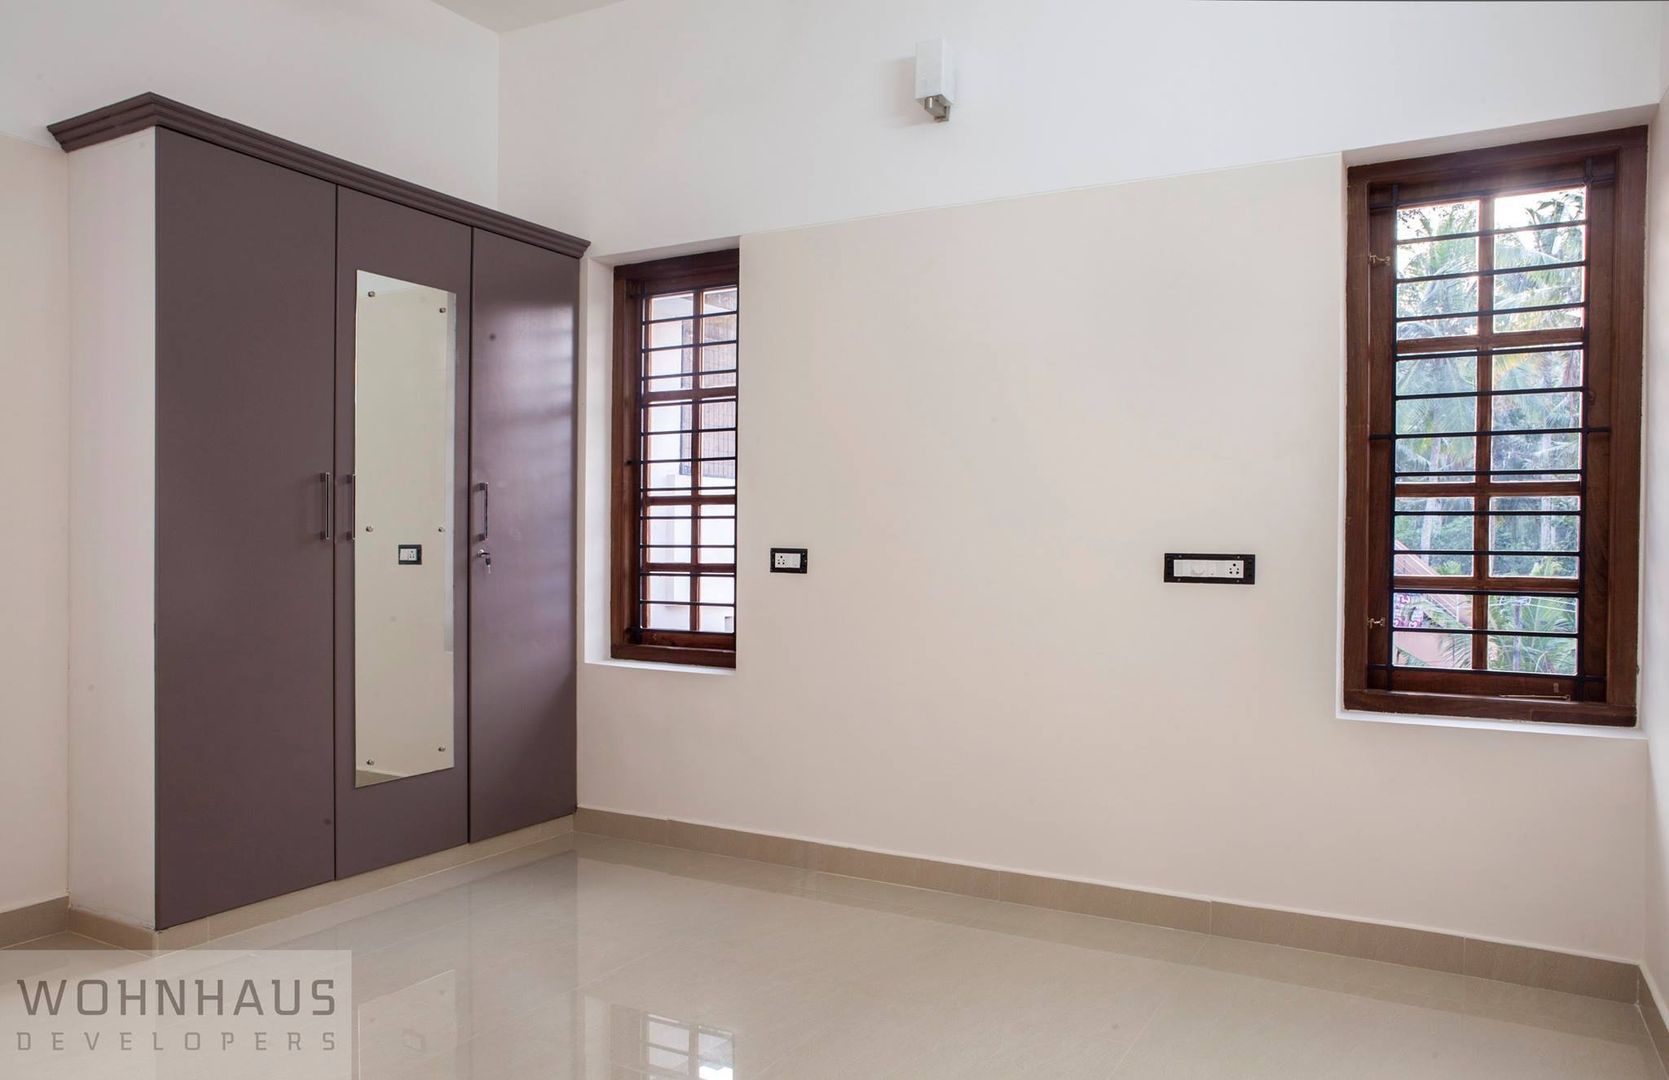 1400sqft House in Trivandrum, Wohnhaus Developers Wohnhaus Developers غرفة نوم سيراميك